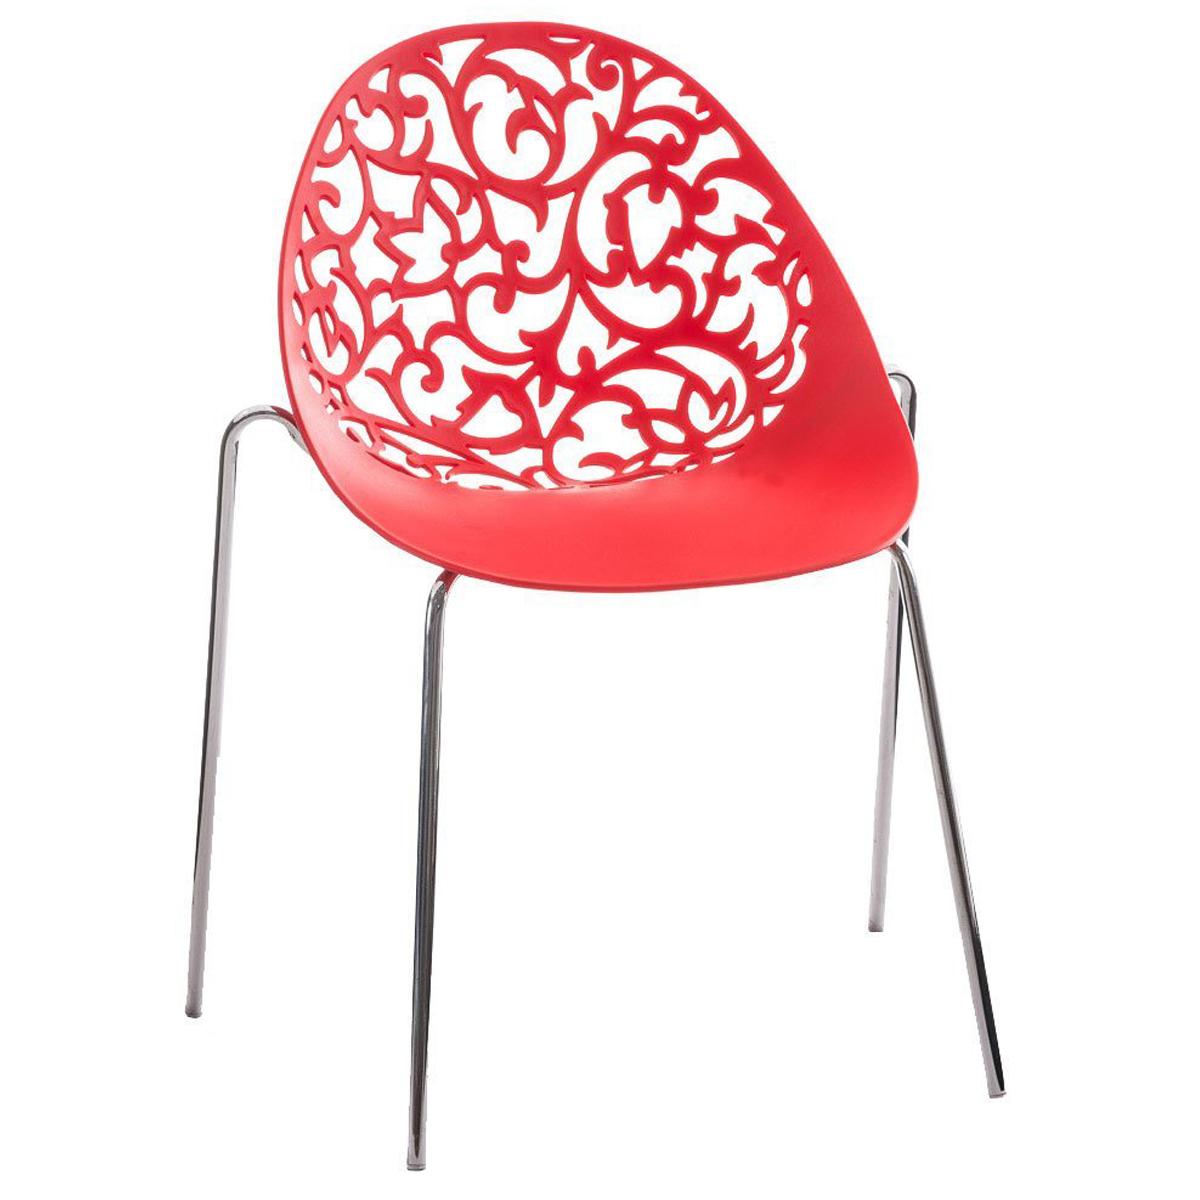 Chaise visiteur DENALI, Empilable, Structure Métallique et Sublime Design, Rouge